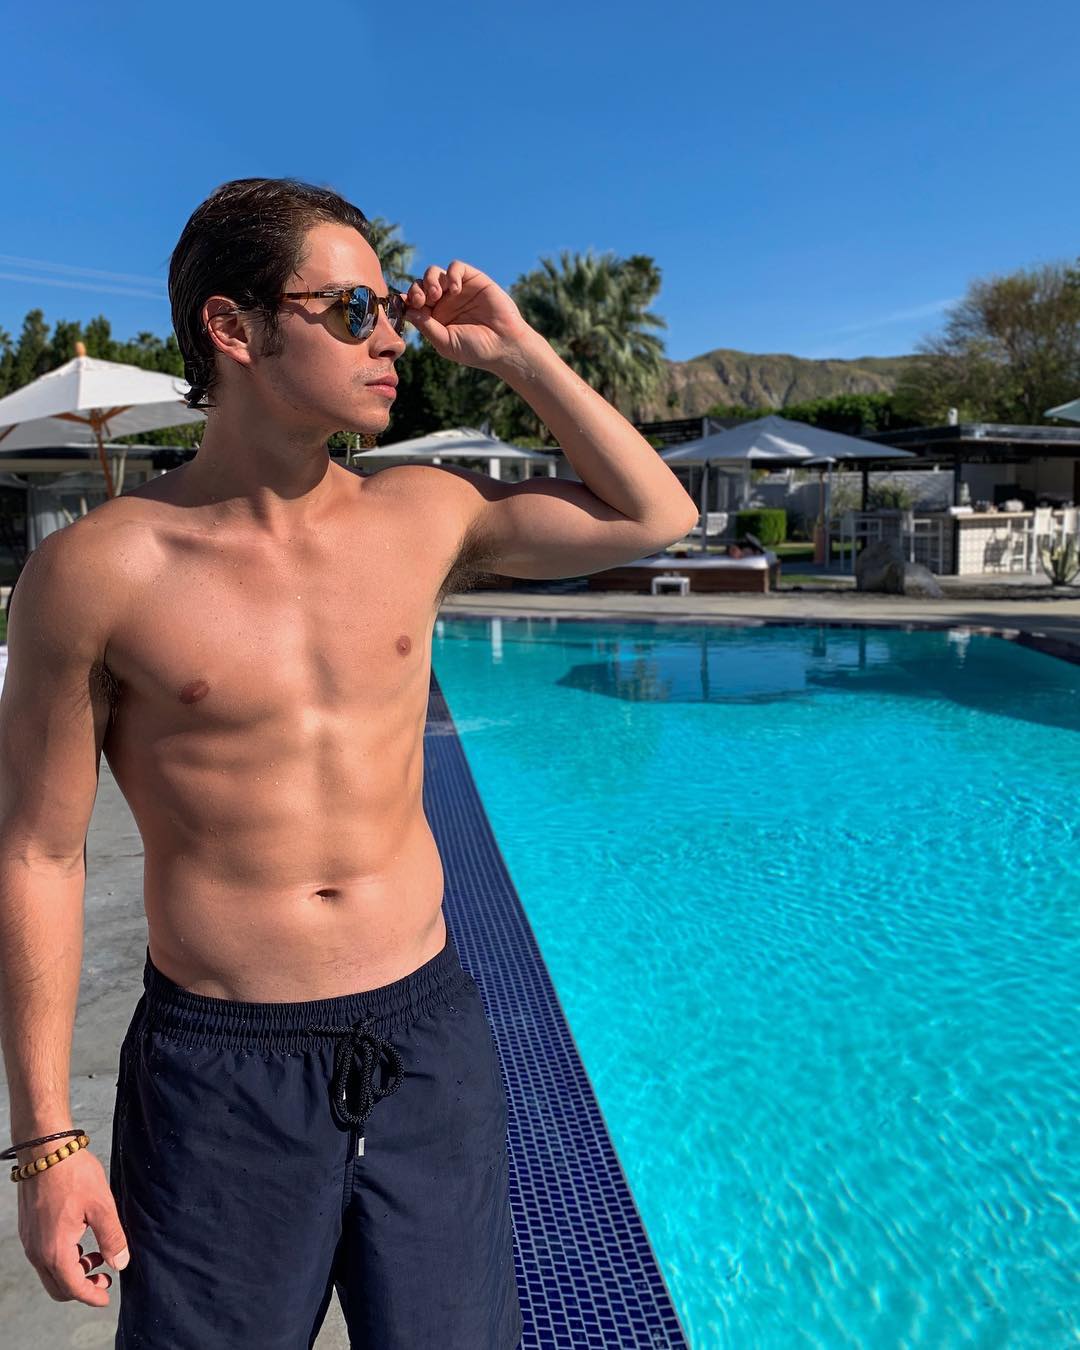 Alexis_Superfan's Shirtless Male Celebs: Jake T Austin shirtless IG posts